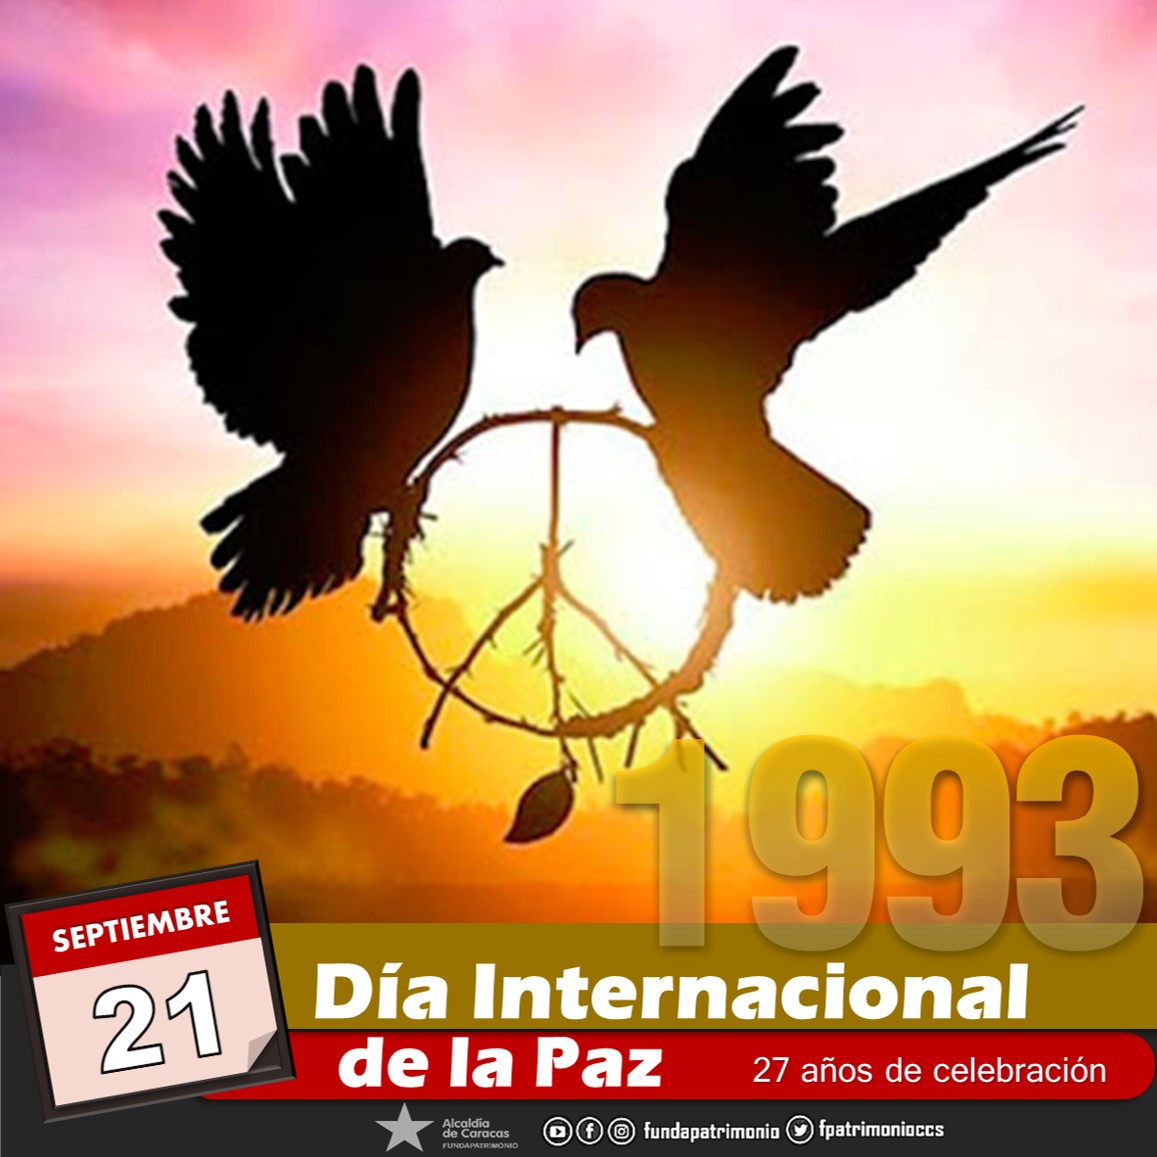 📆 #Efemérides El #21Sep de 1993, tal día como hoy desde hace 27 años, los y las venezolanas celebramos nuestra voluntad inquebrantable de transitar por el camino pacifista en el Día Internacional de la Paz 📢#GarantizamosLaPaz .@ErikaPSUV .@AlcaldiadeC @LachinaPSUV @fundarte_ccs